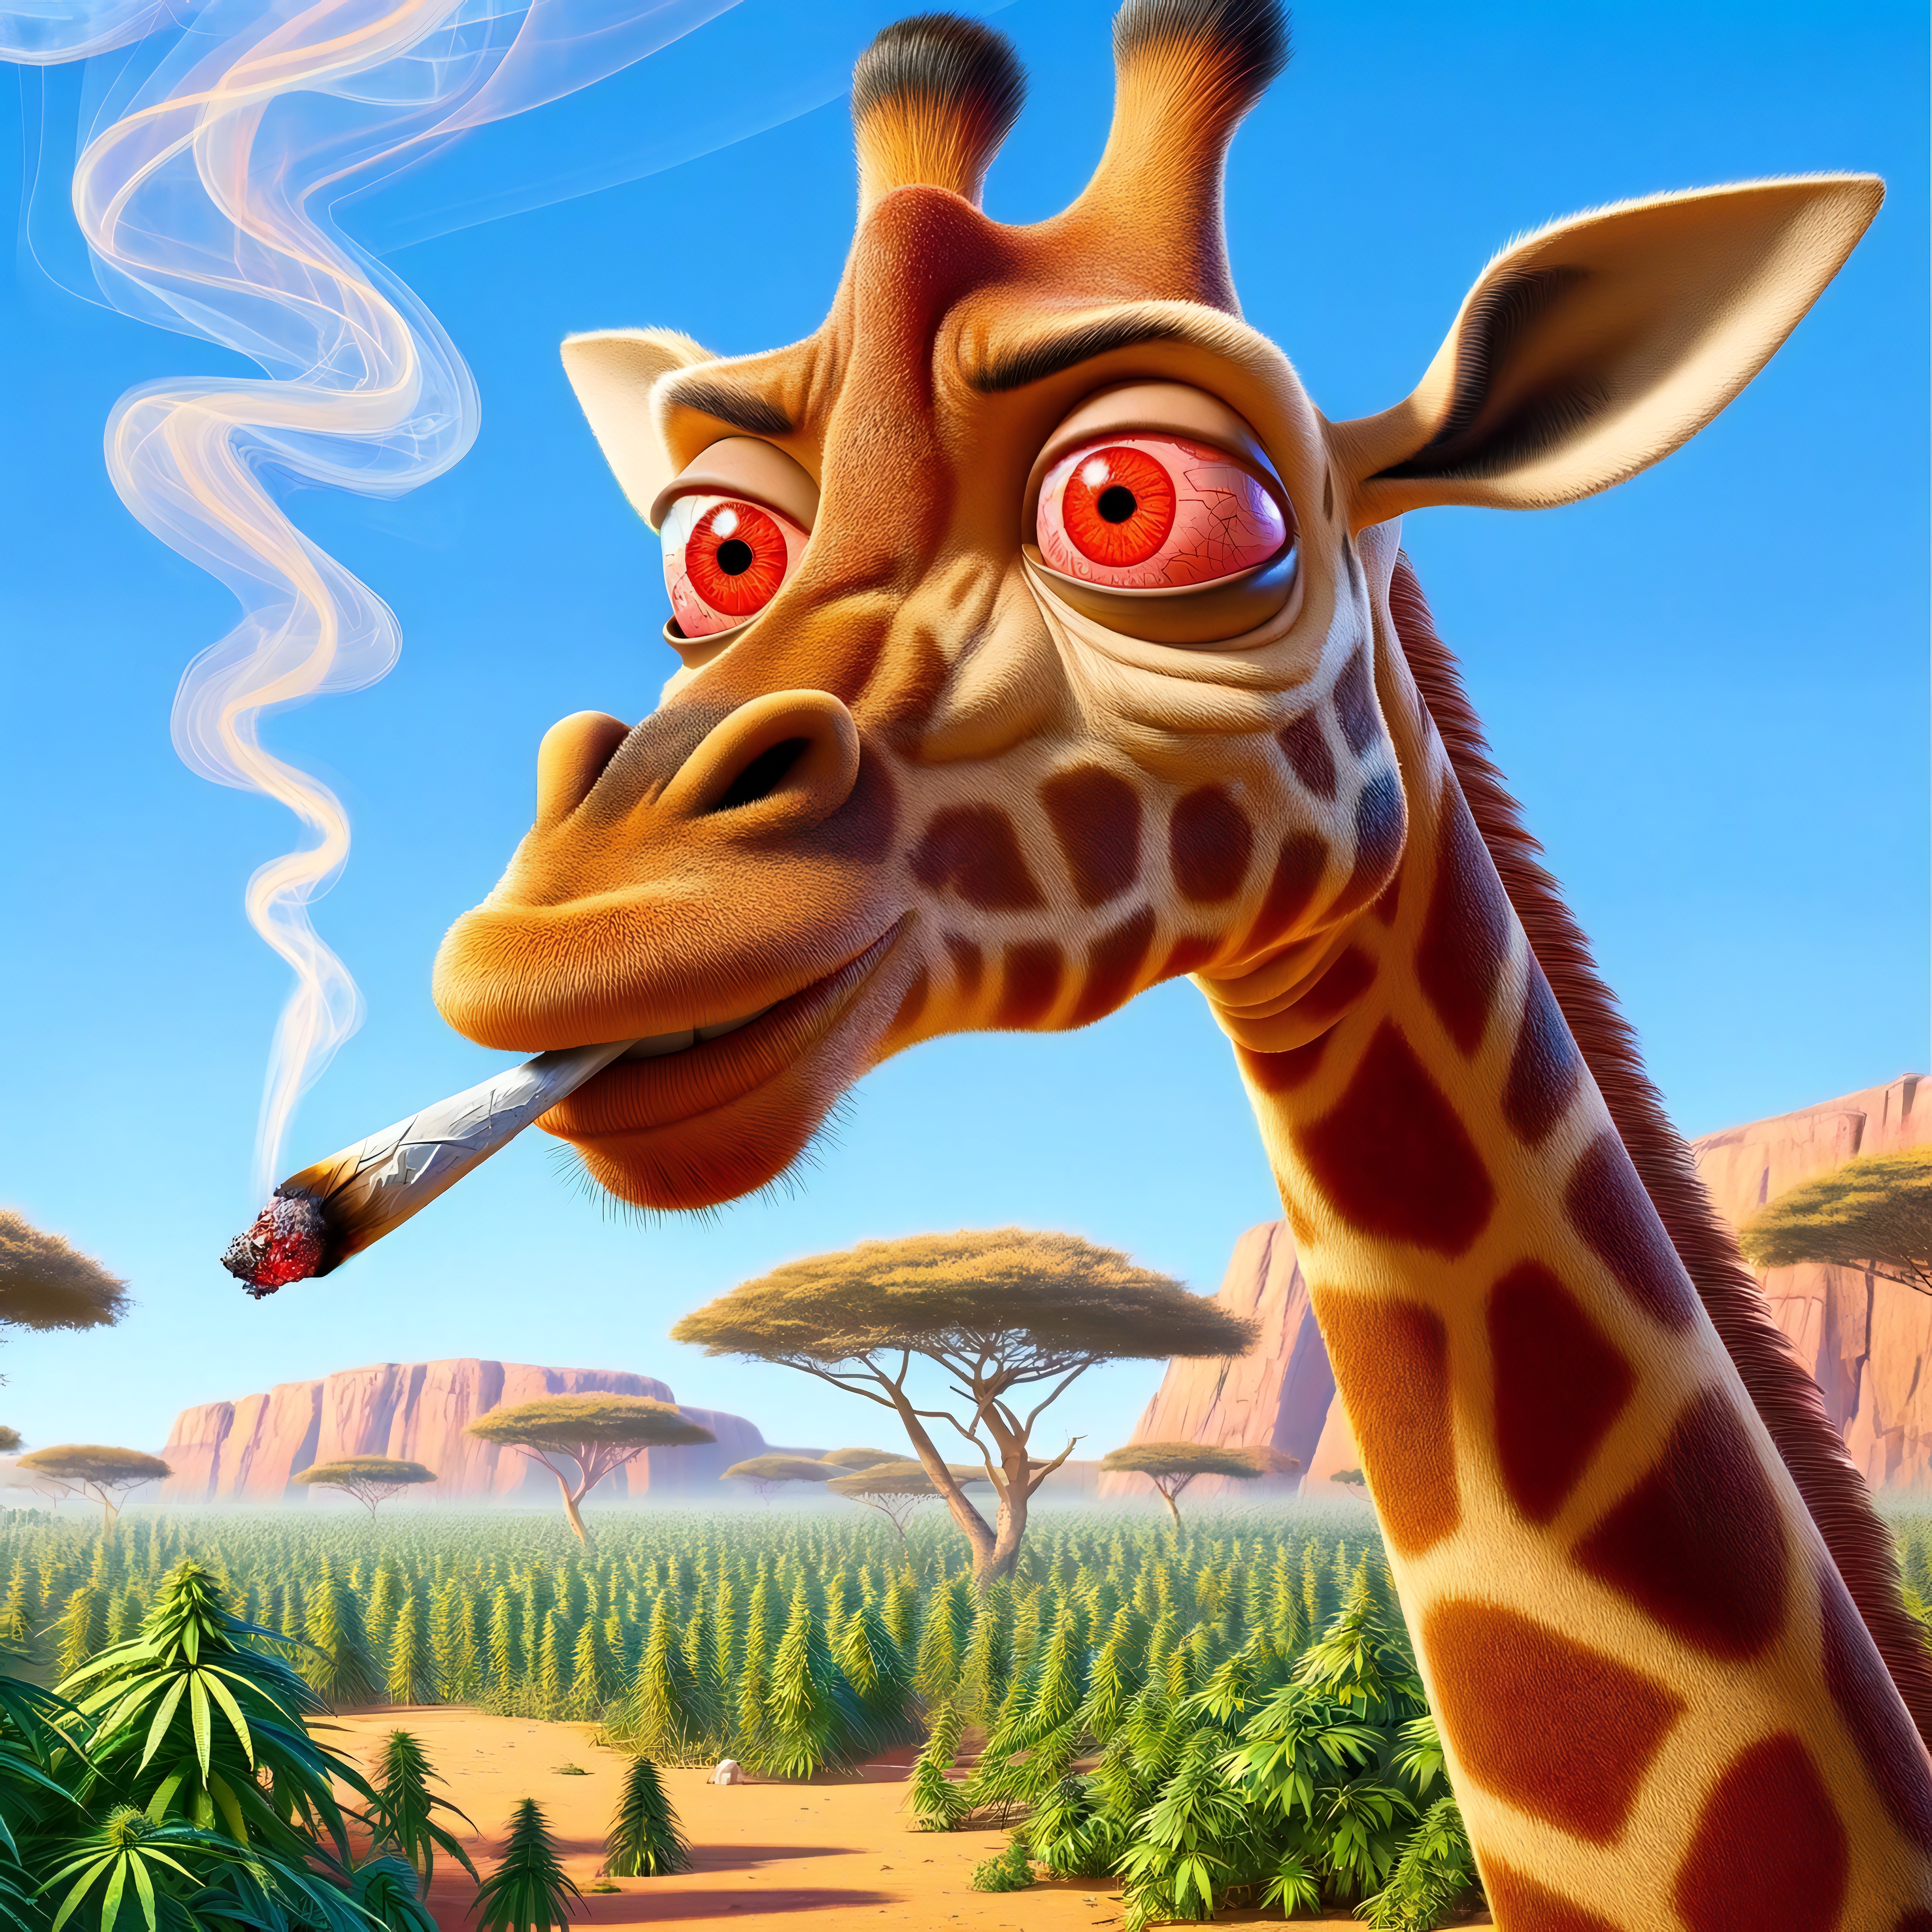 Gerald the Giraffe asset